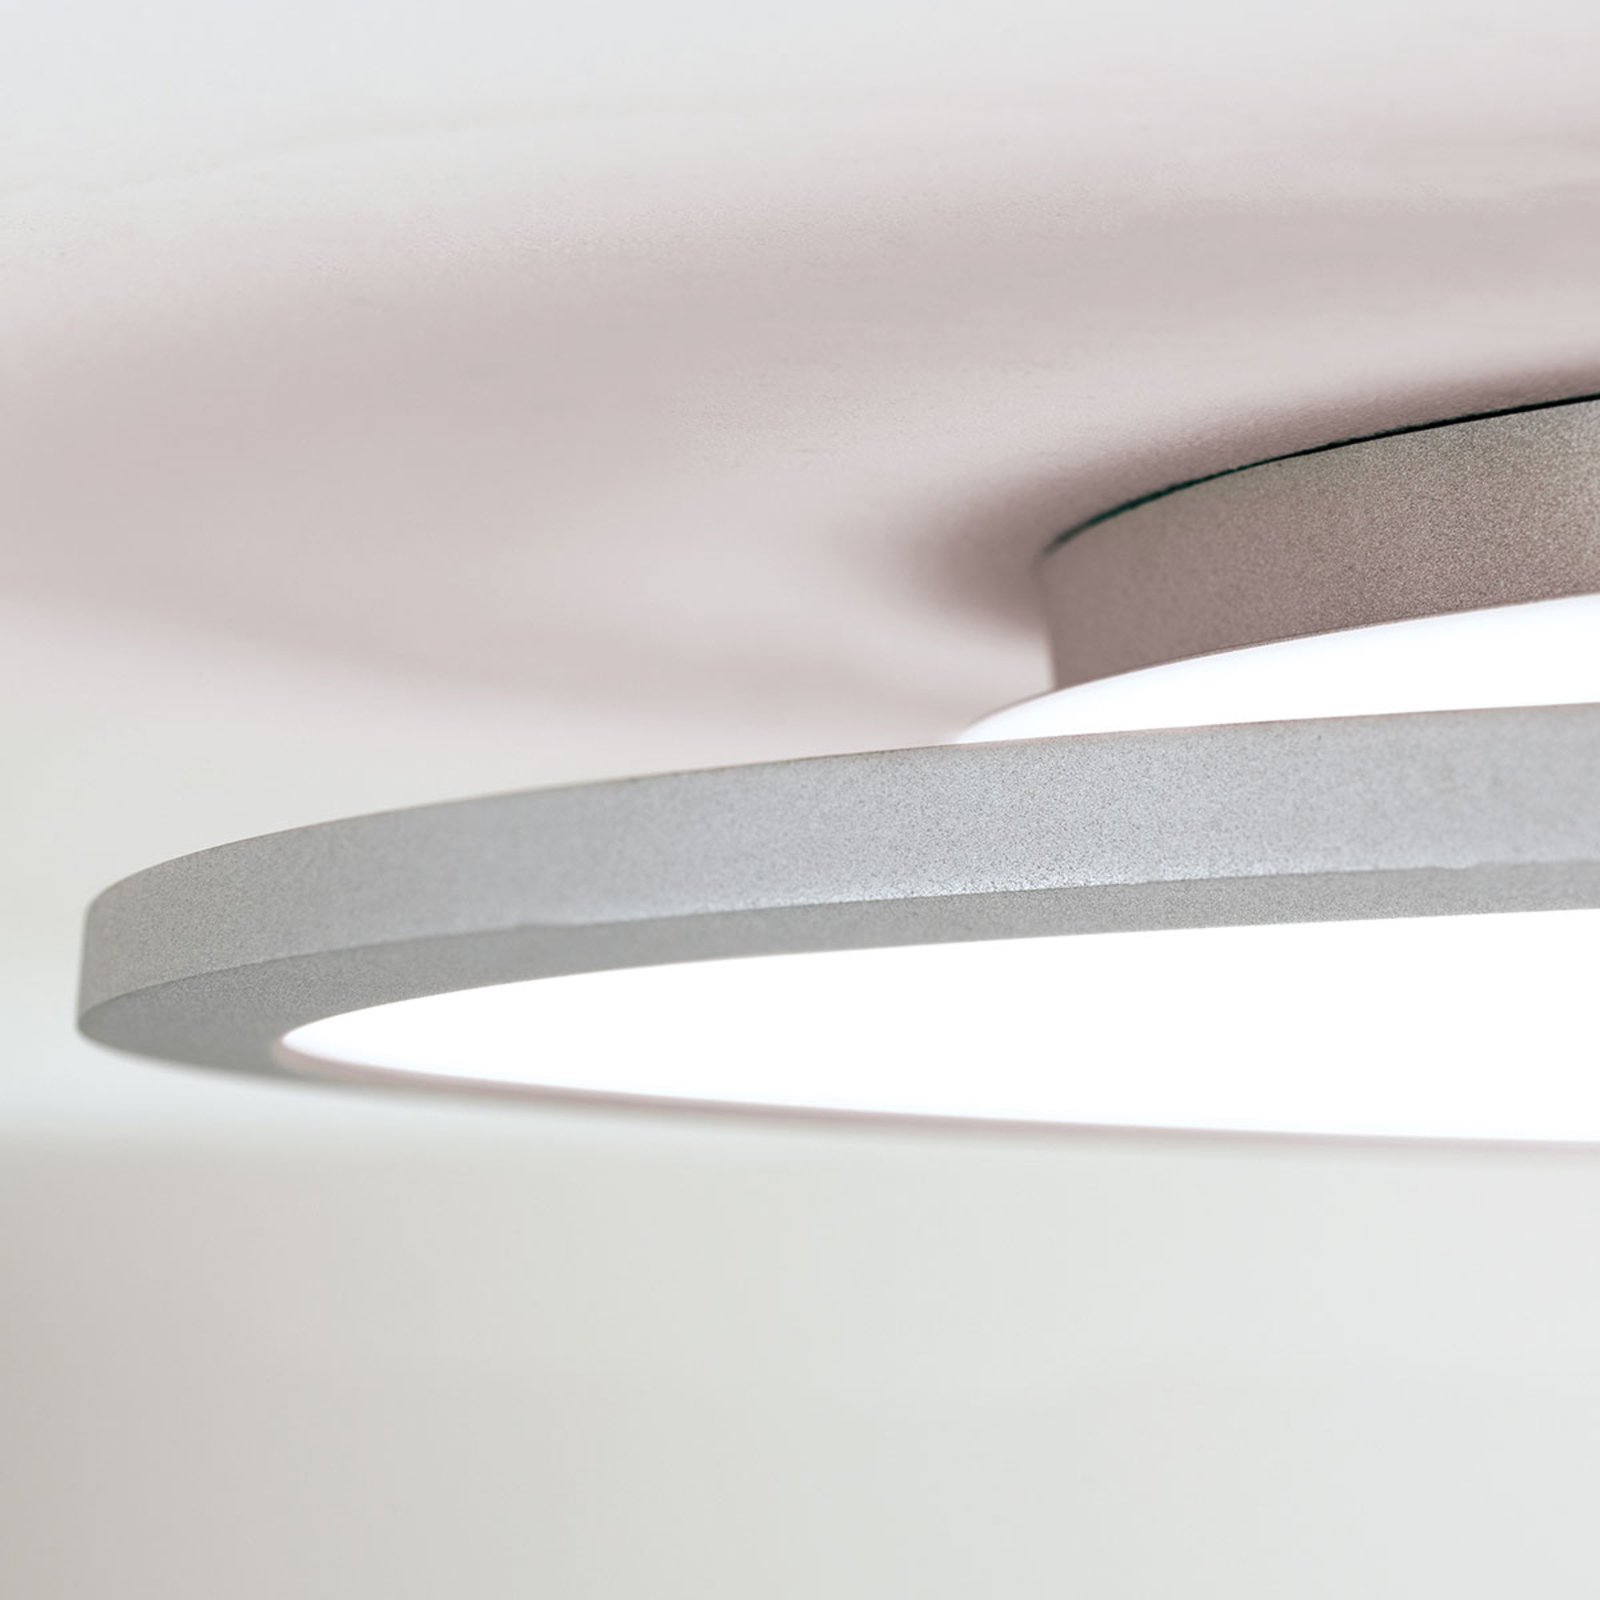 Aria - dimbare LED plafondlamp 75 cm